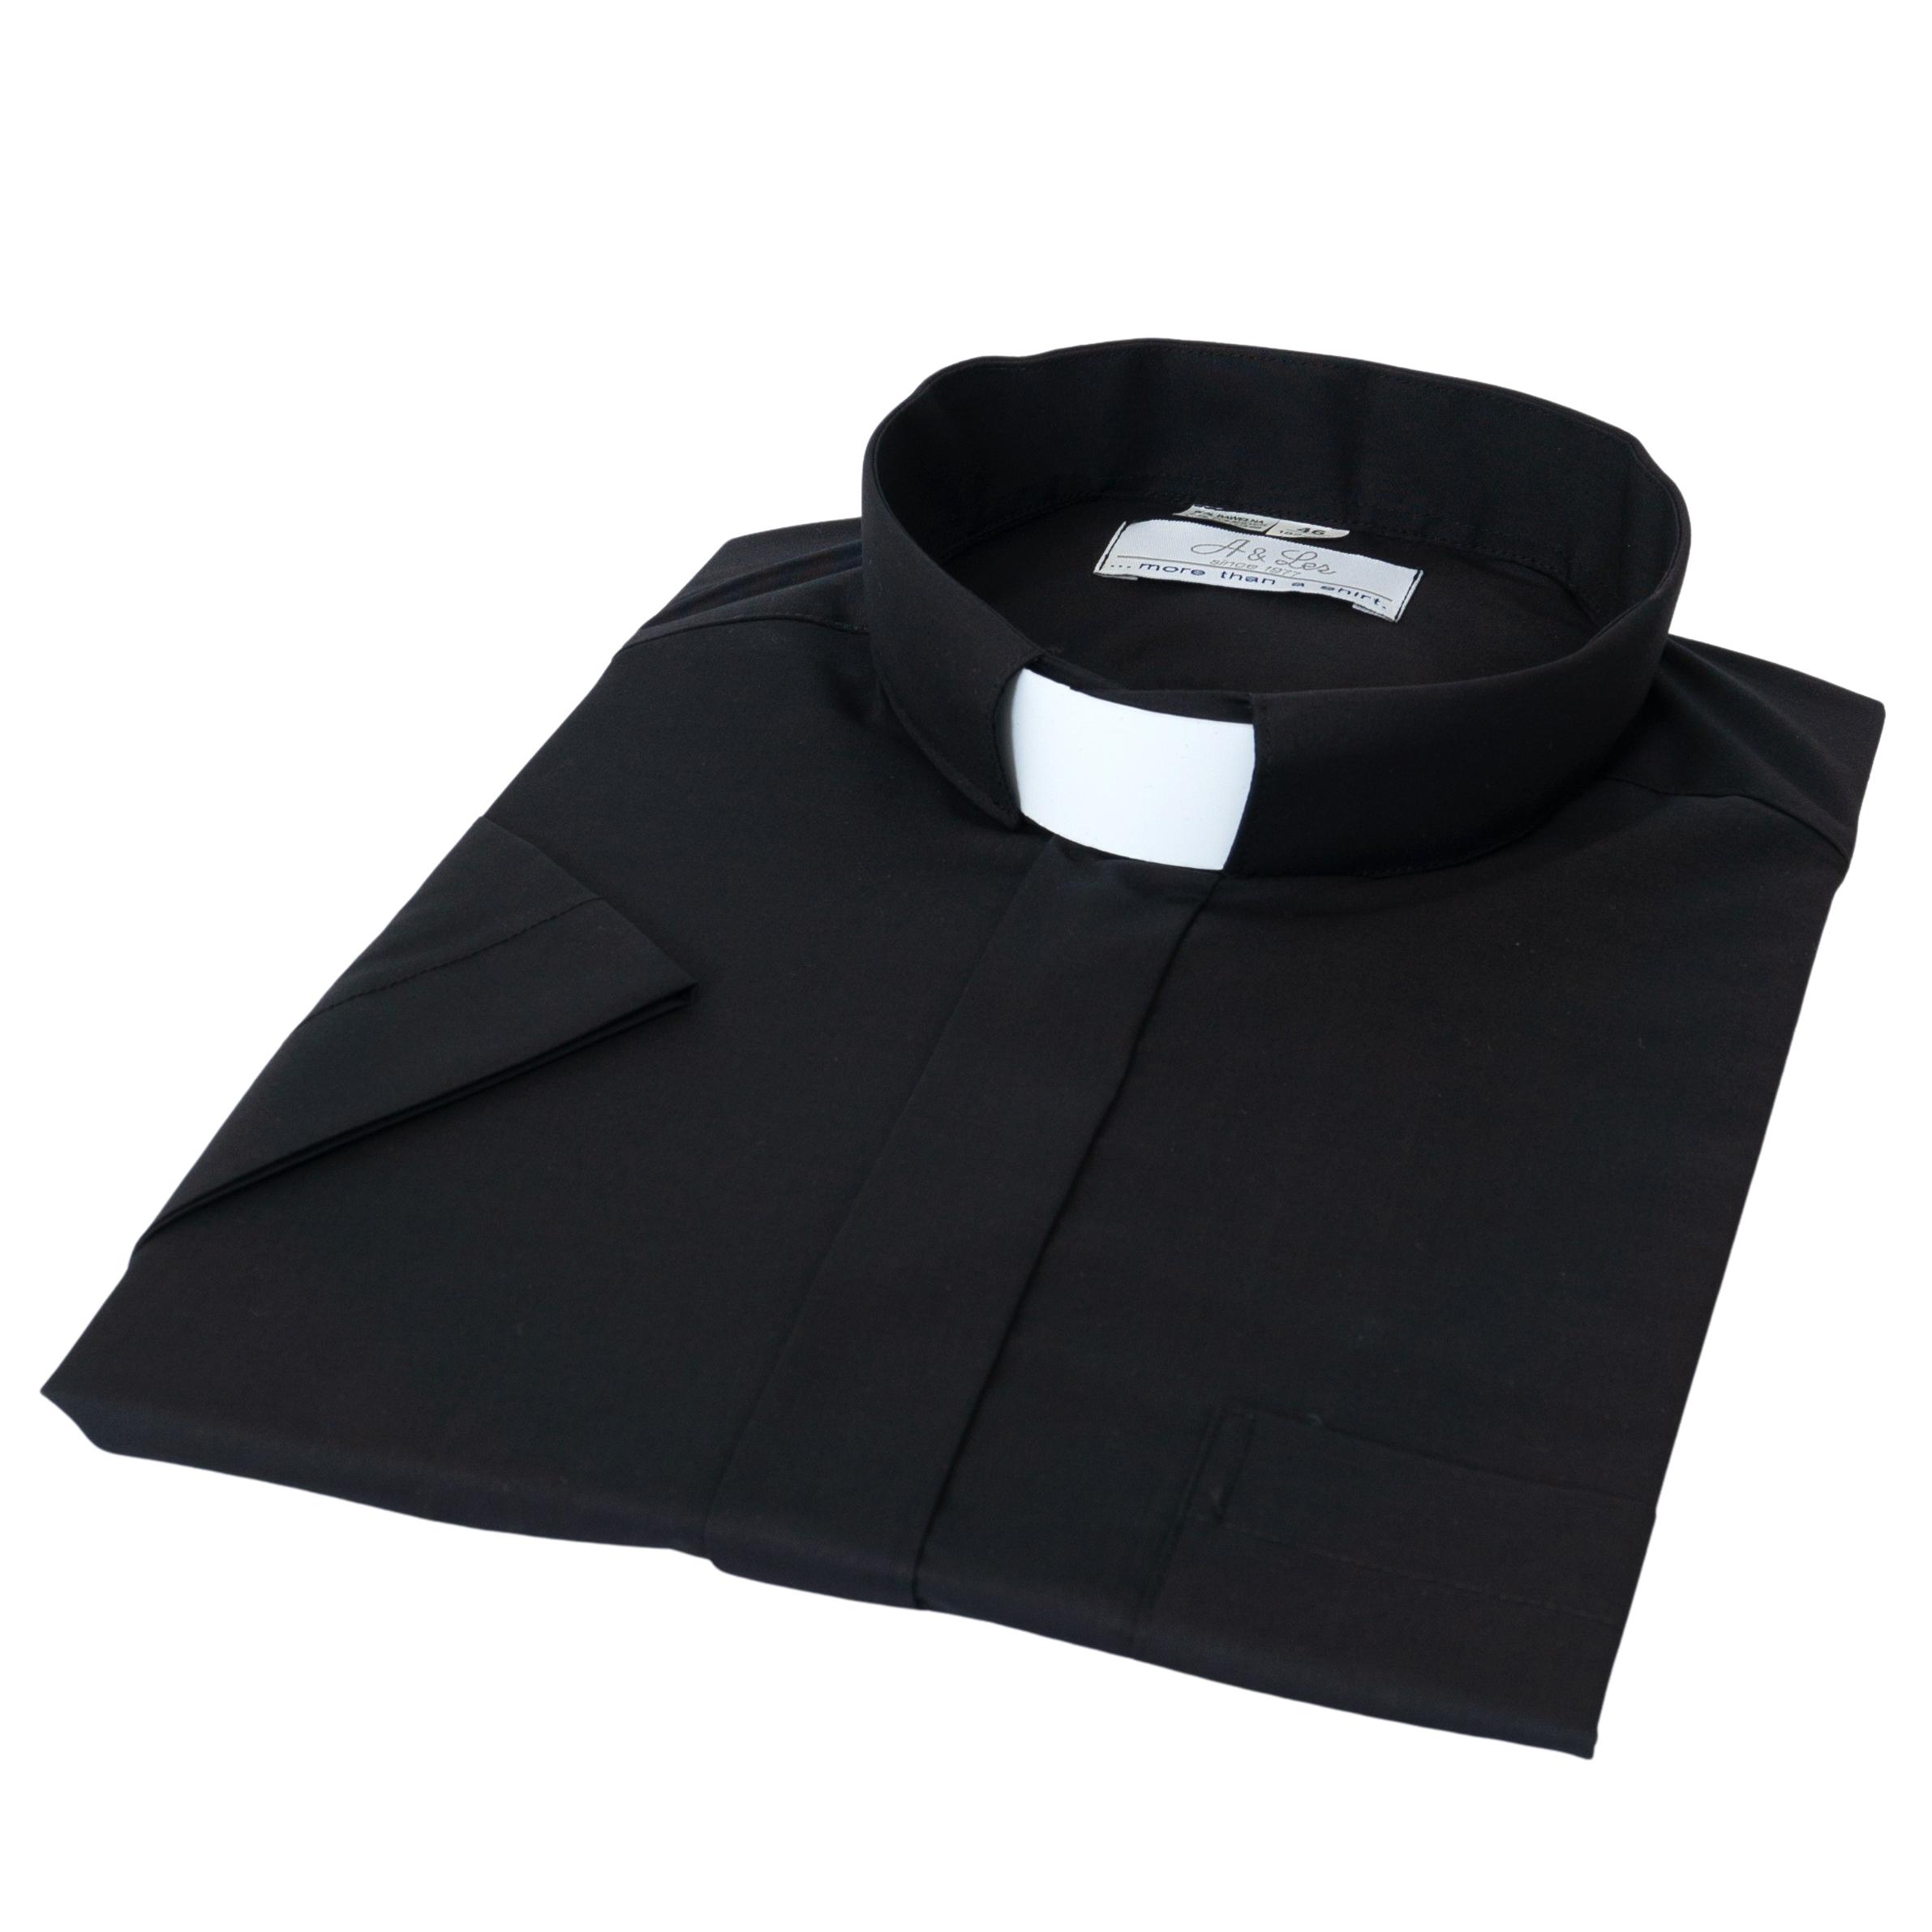 Civil papi ing rövid ujjú kolláréval, fekete színben